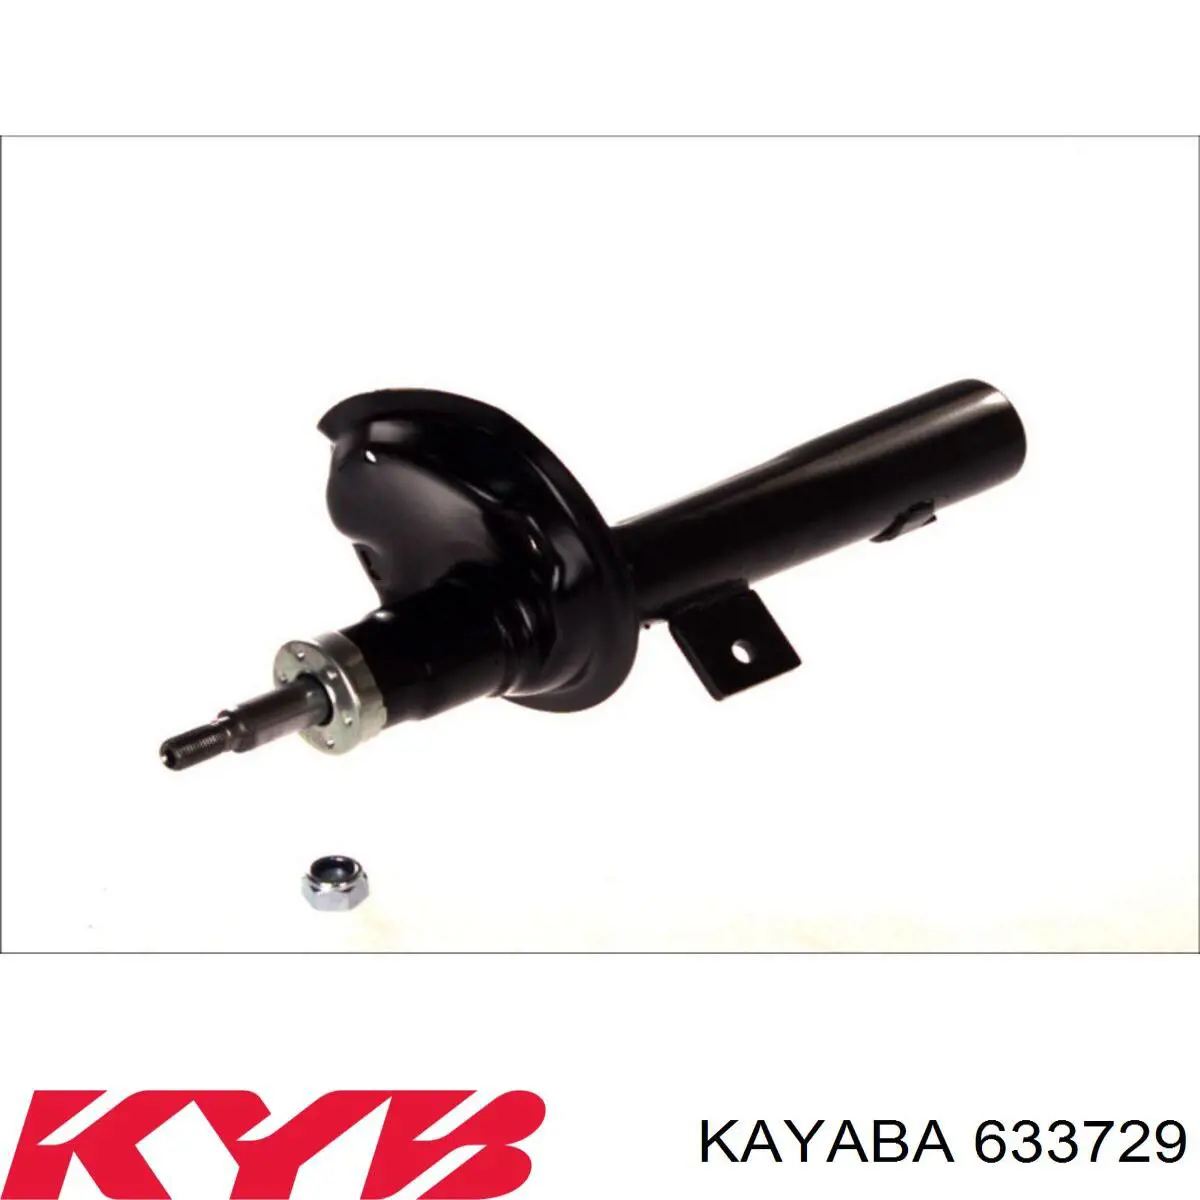 633729 Kayaba amortiguador delantero derecho